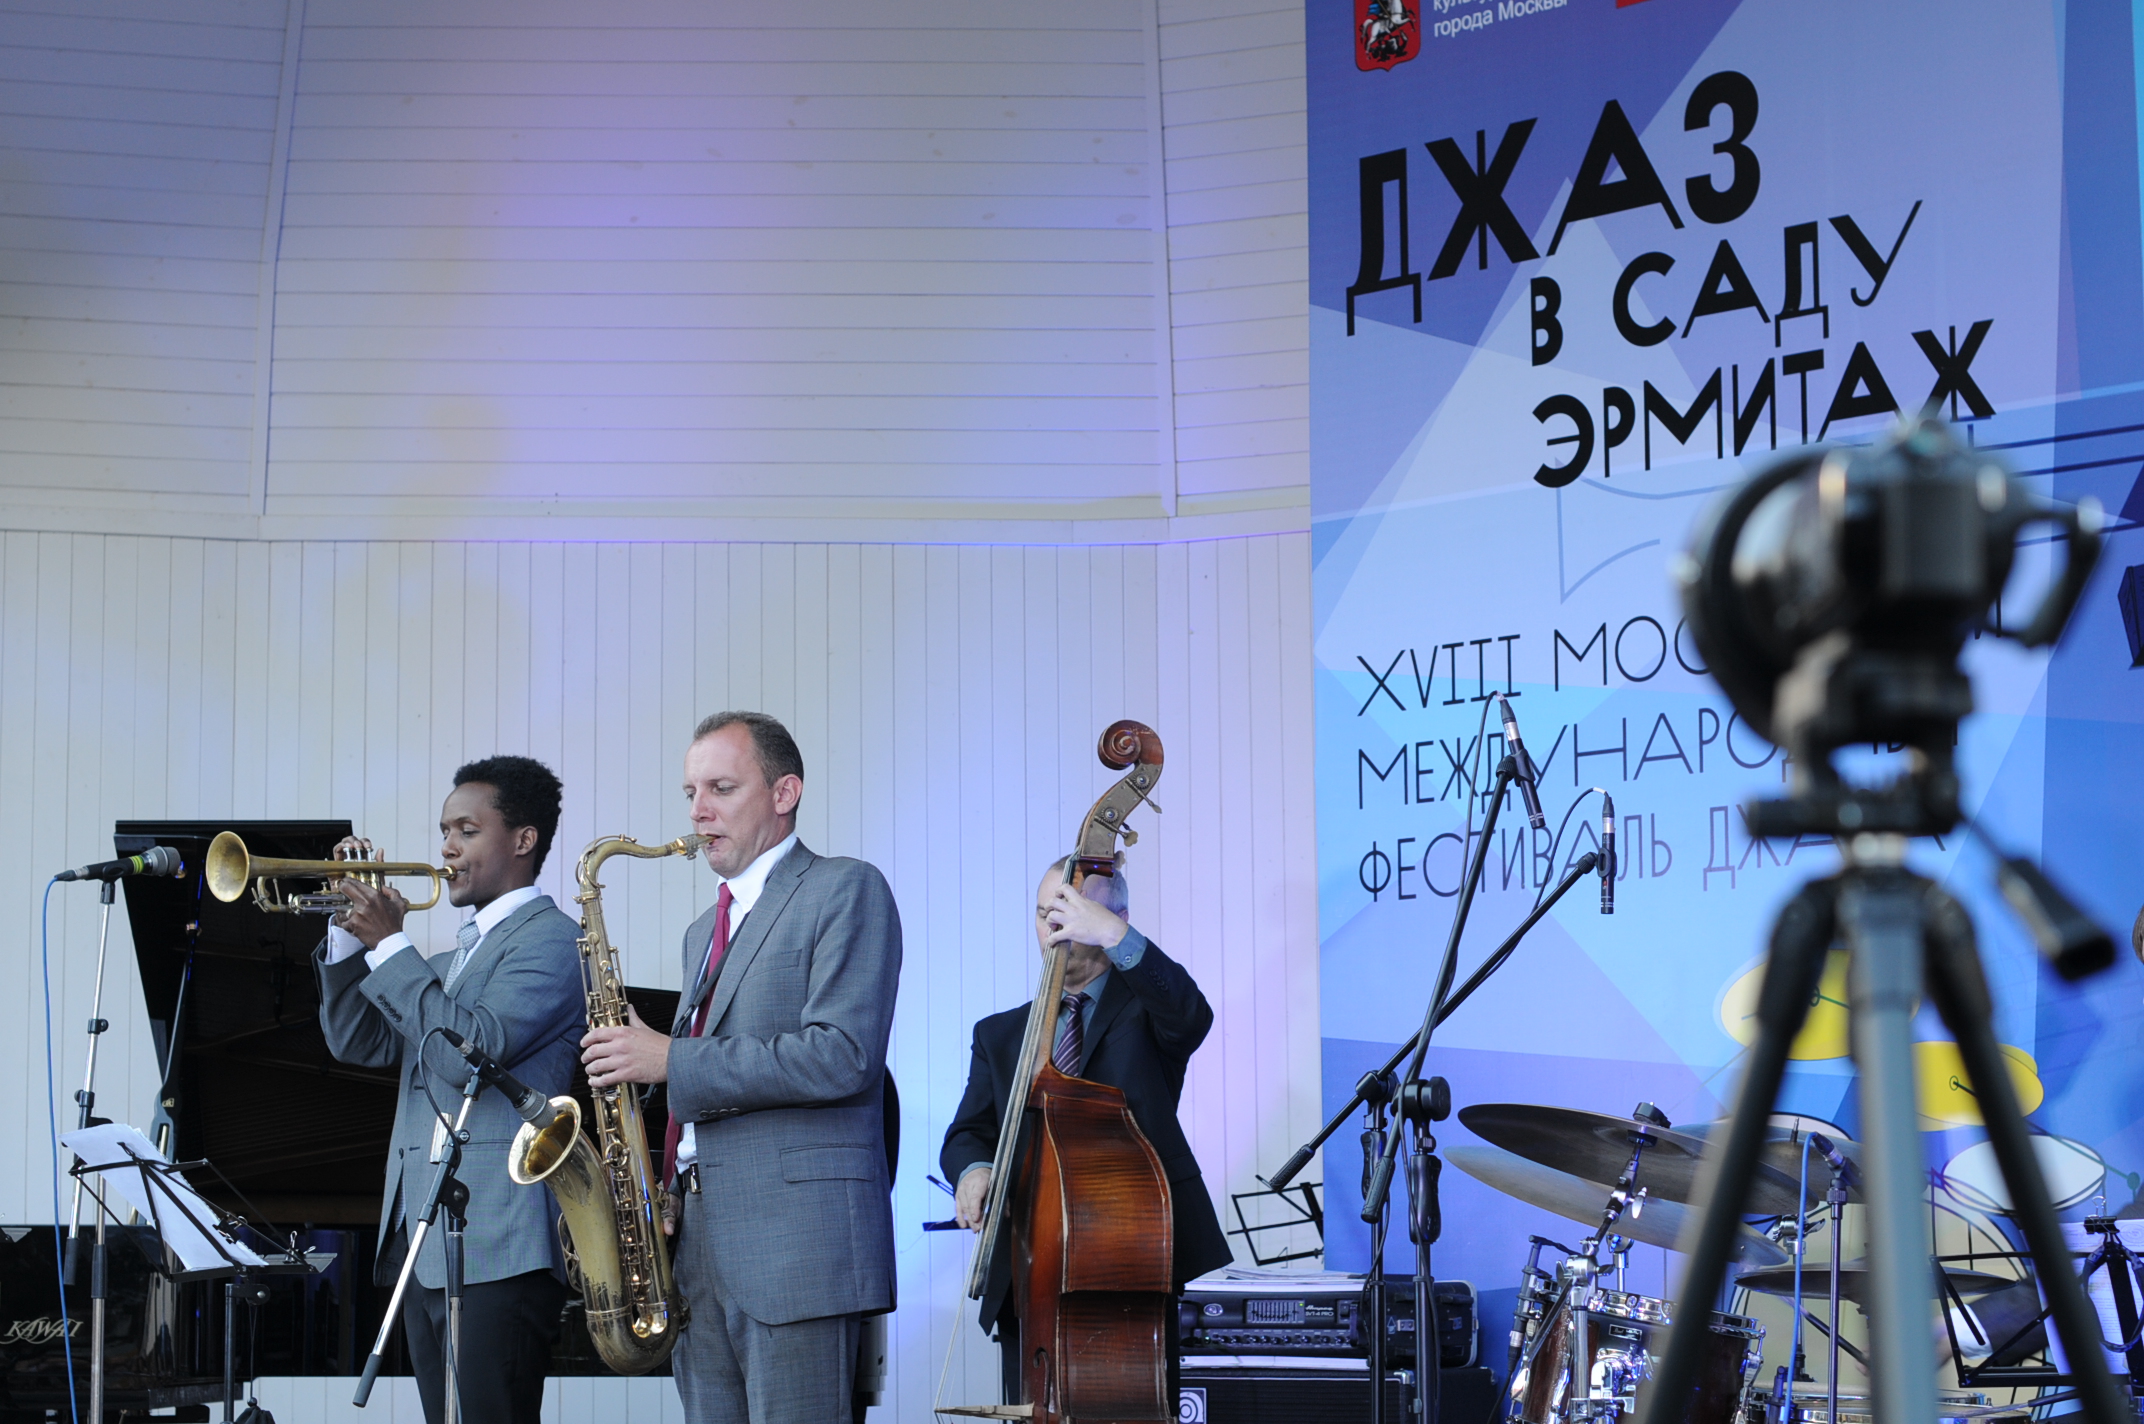 НФПП приглашает на фестиваль «Джаз в саду Эрмитаж»